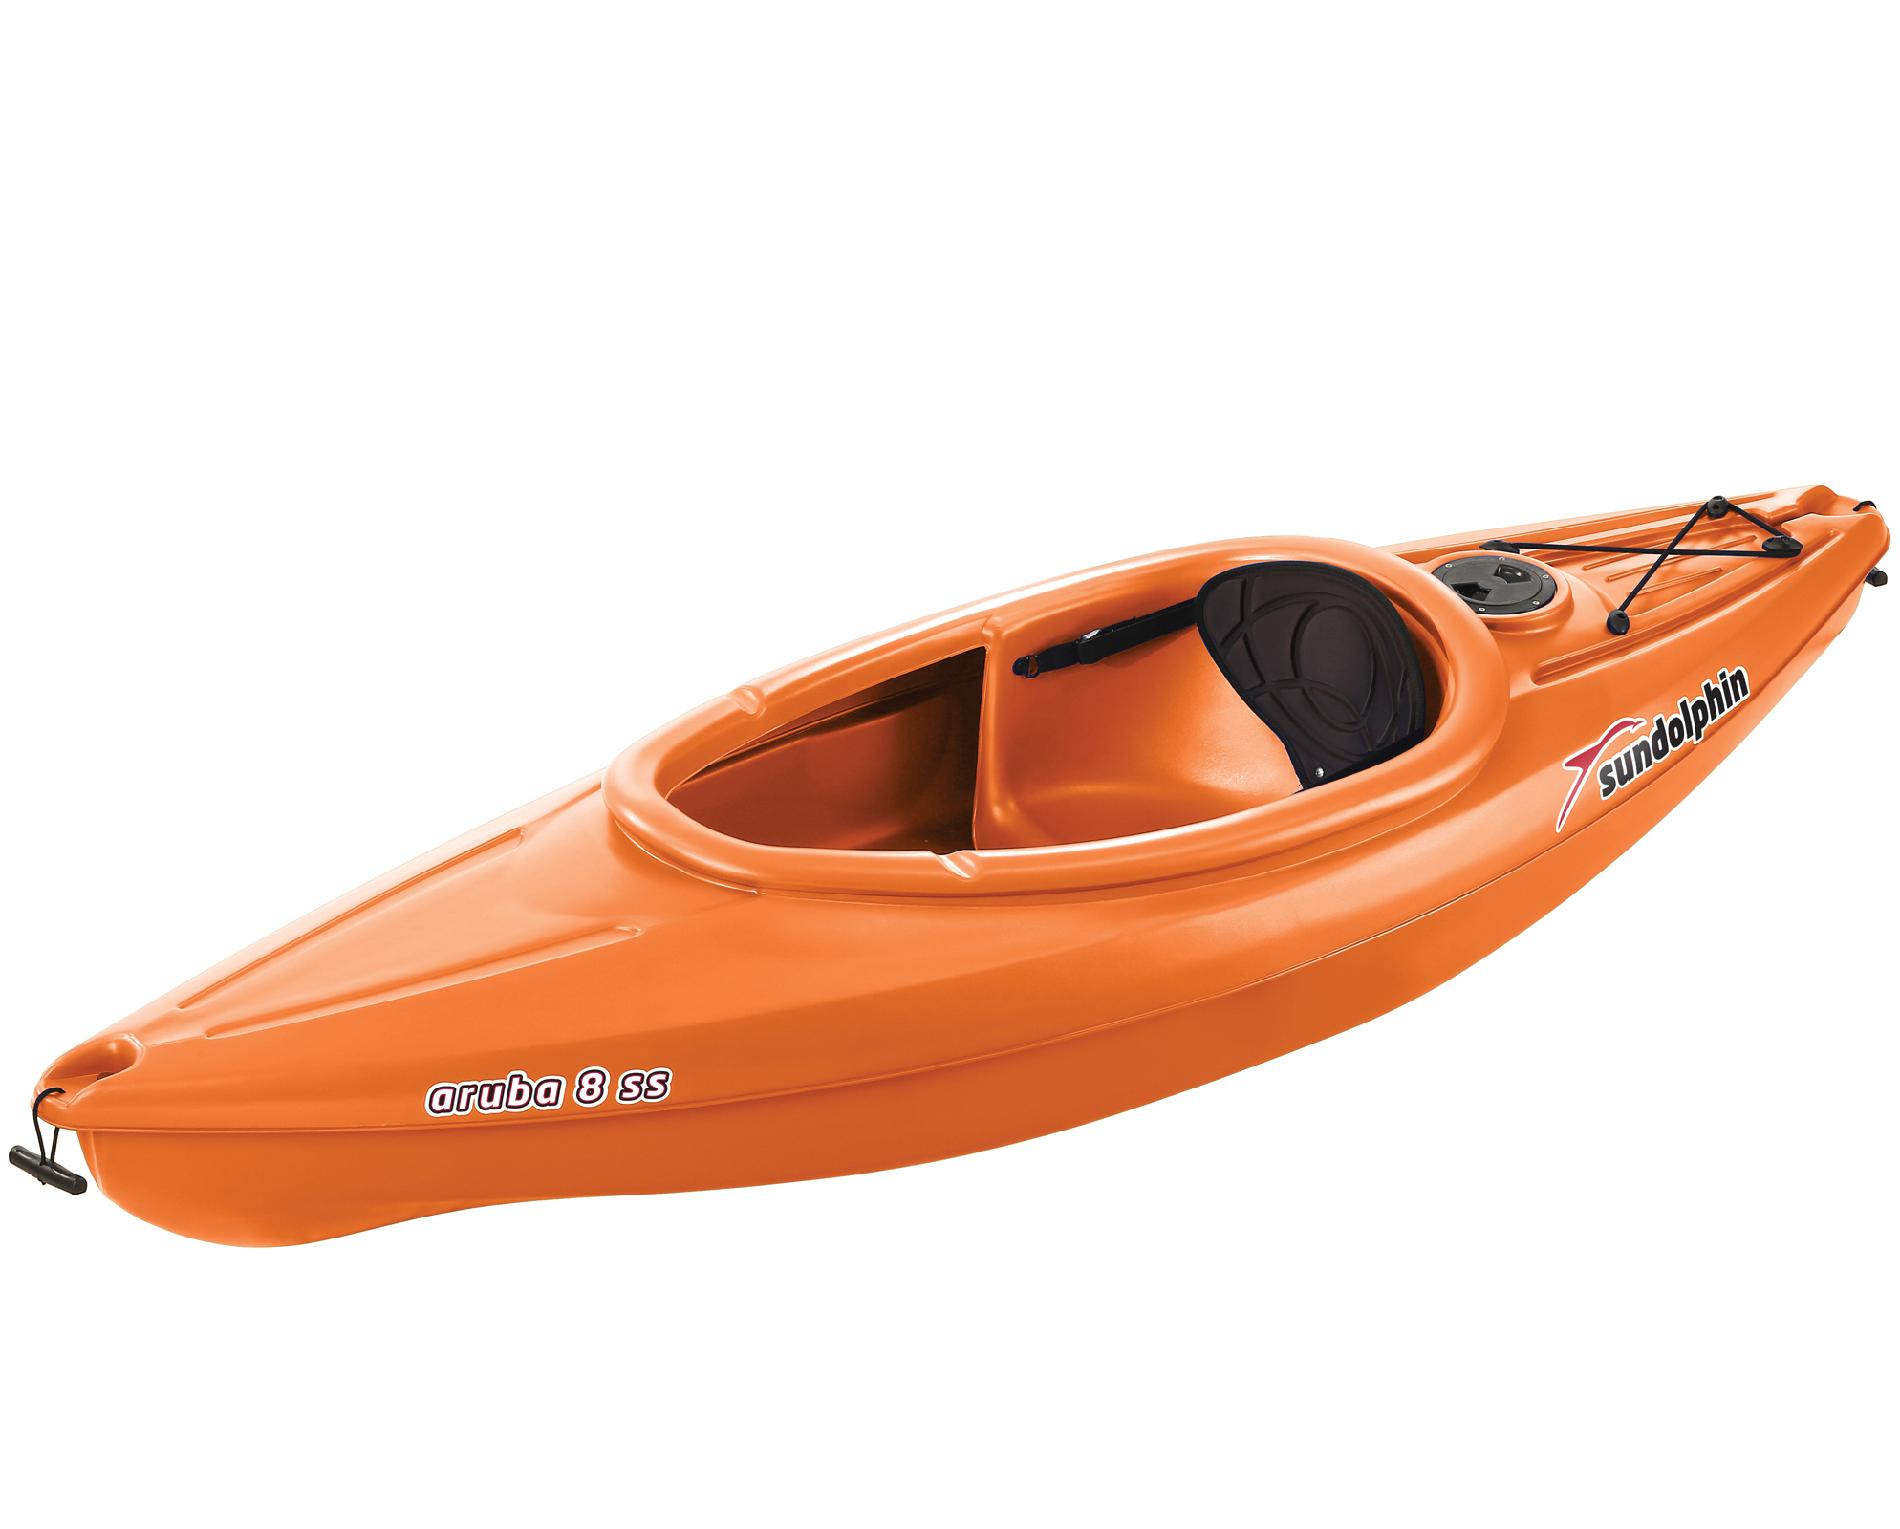 Sun Dolphin Aruba 8' 1 Person Sit-In Kayak in Tangerine Orange with ...